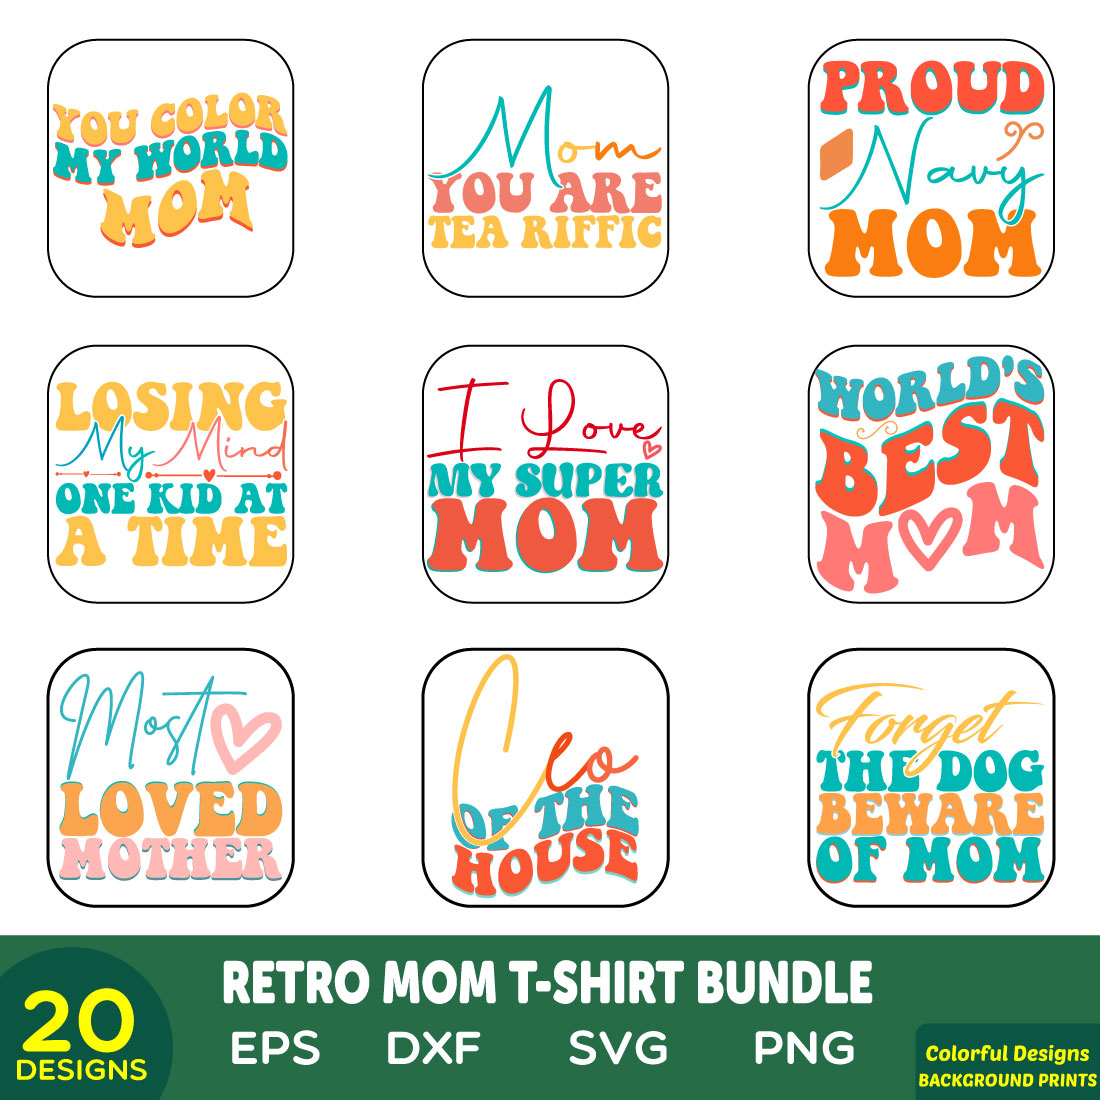 retro mom t-shirt bundle preview image.